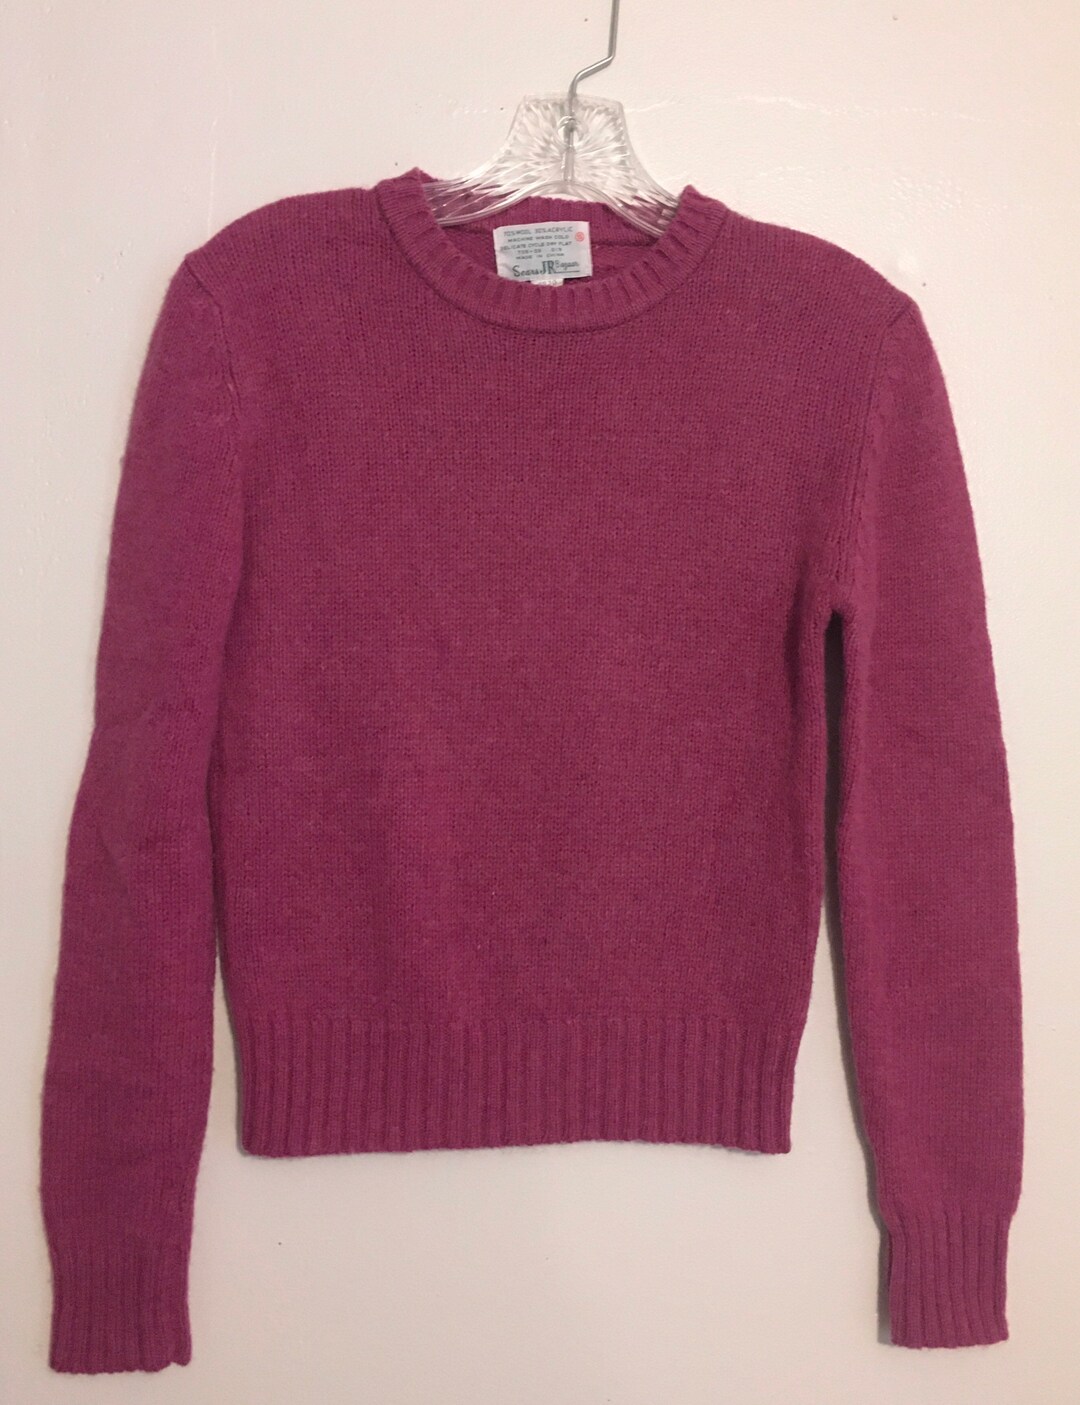 Vintage Sweater Sears 1970s JR Bazaar Sweater - Etsy